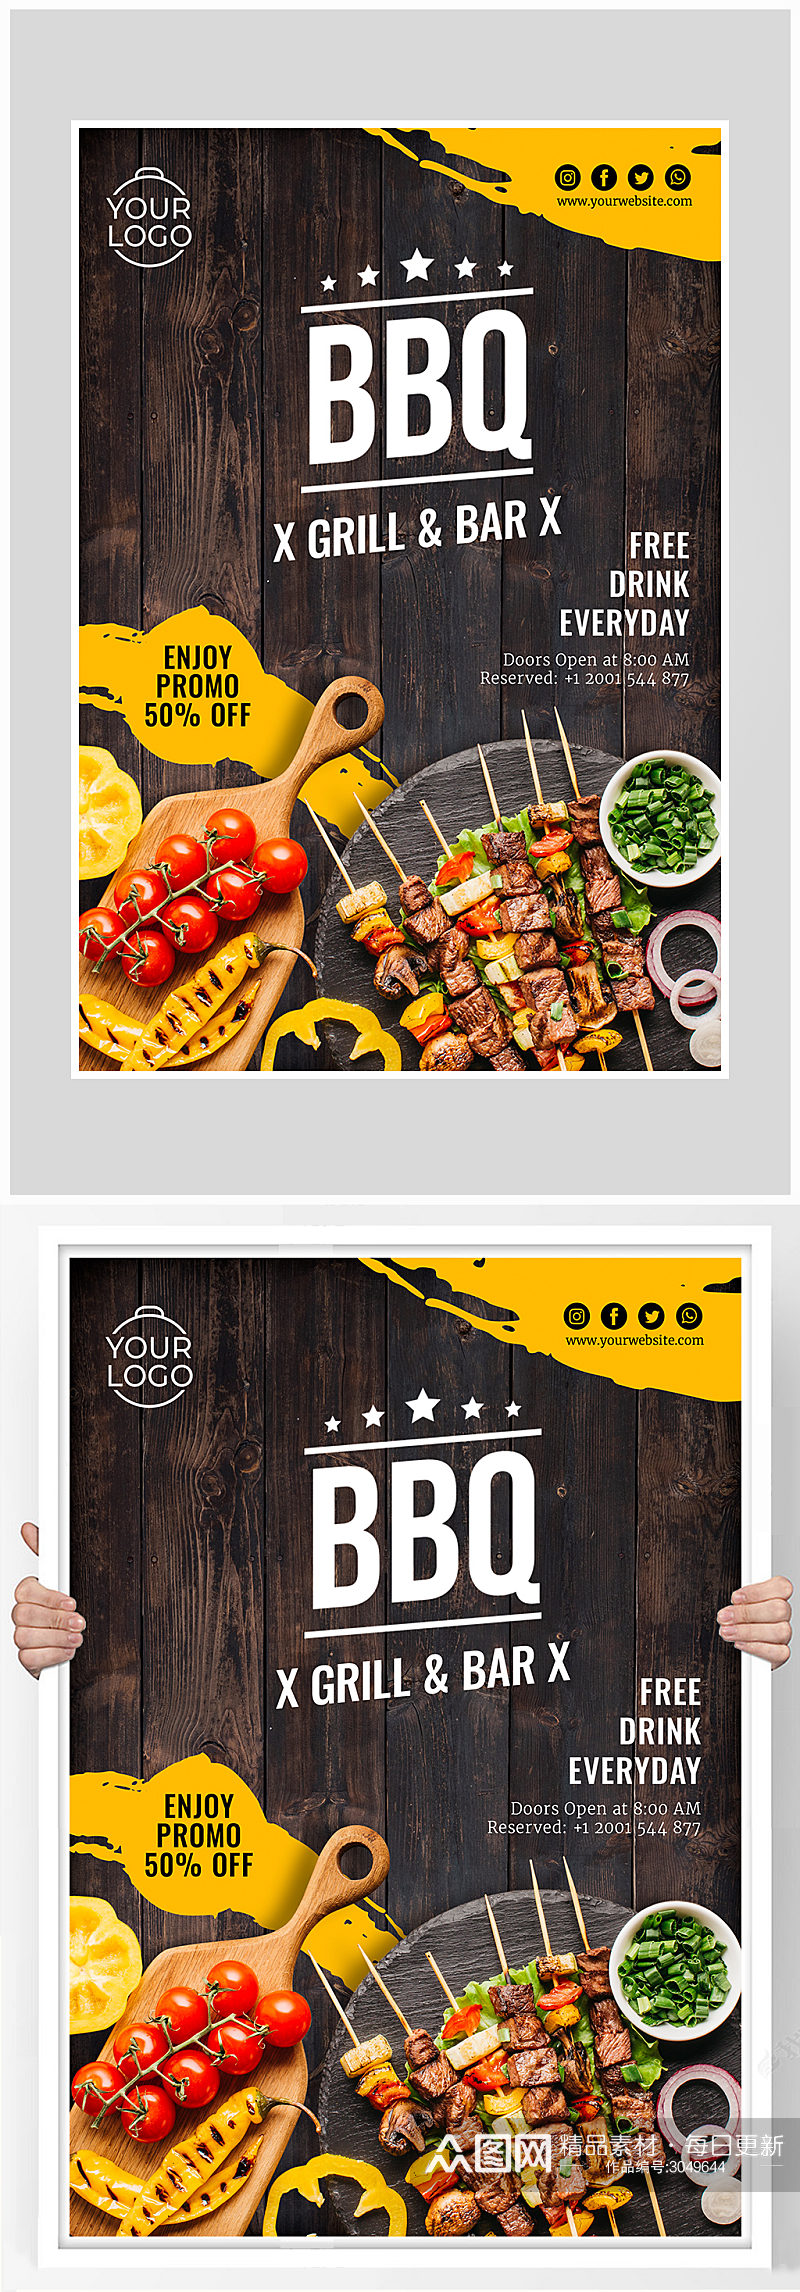 创意烧烤BBQ烤肉野炊海报设计素材